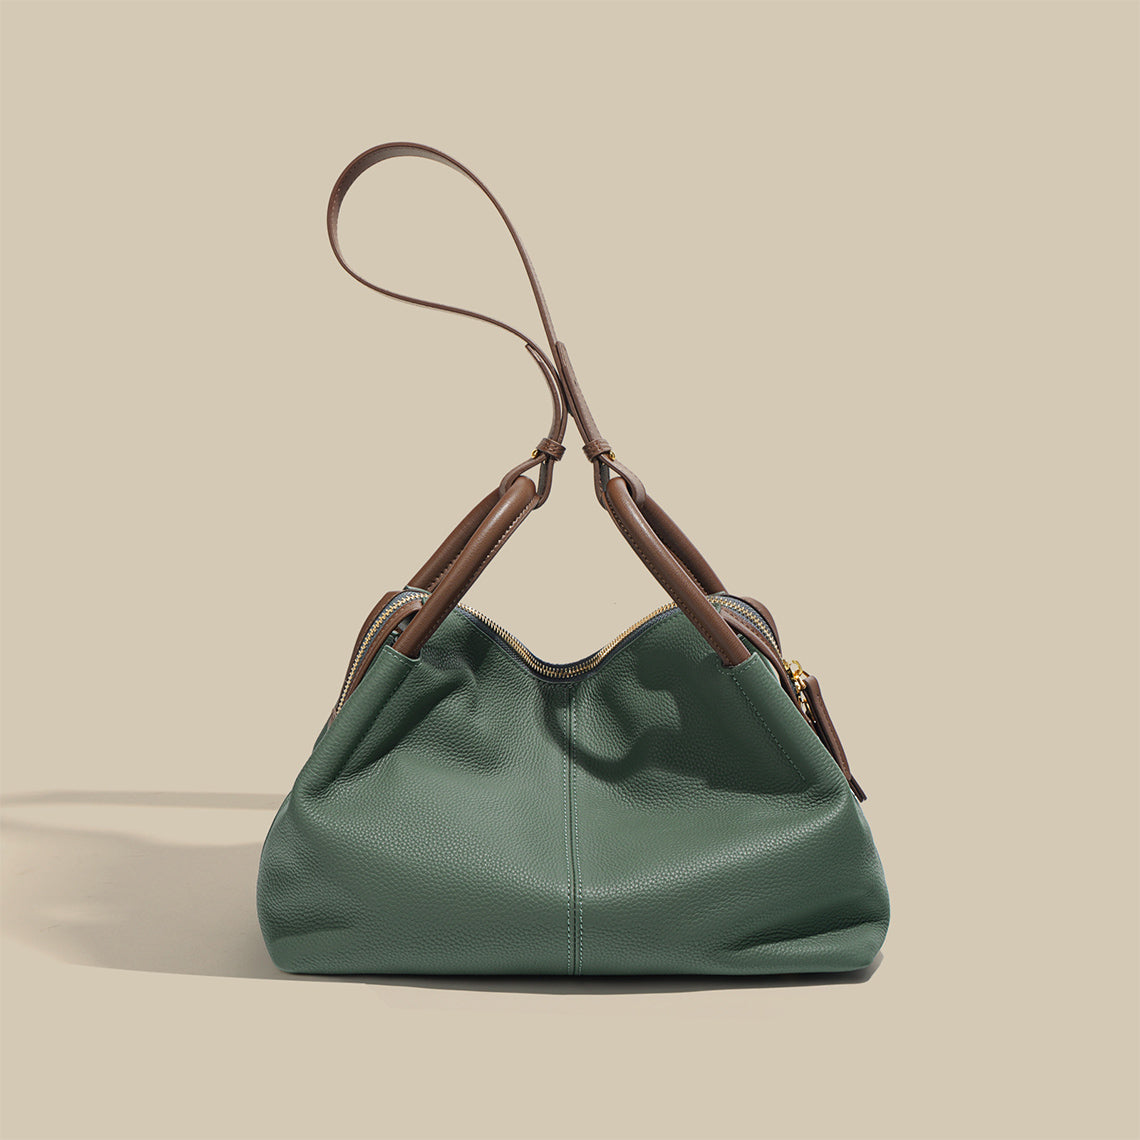 Large Leather Tote Handbag | Women Shoulder Bag - POPSEWING™